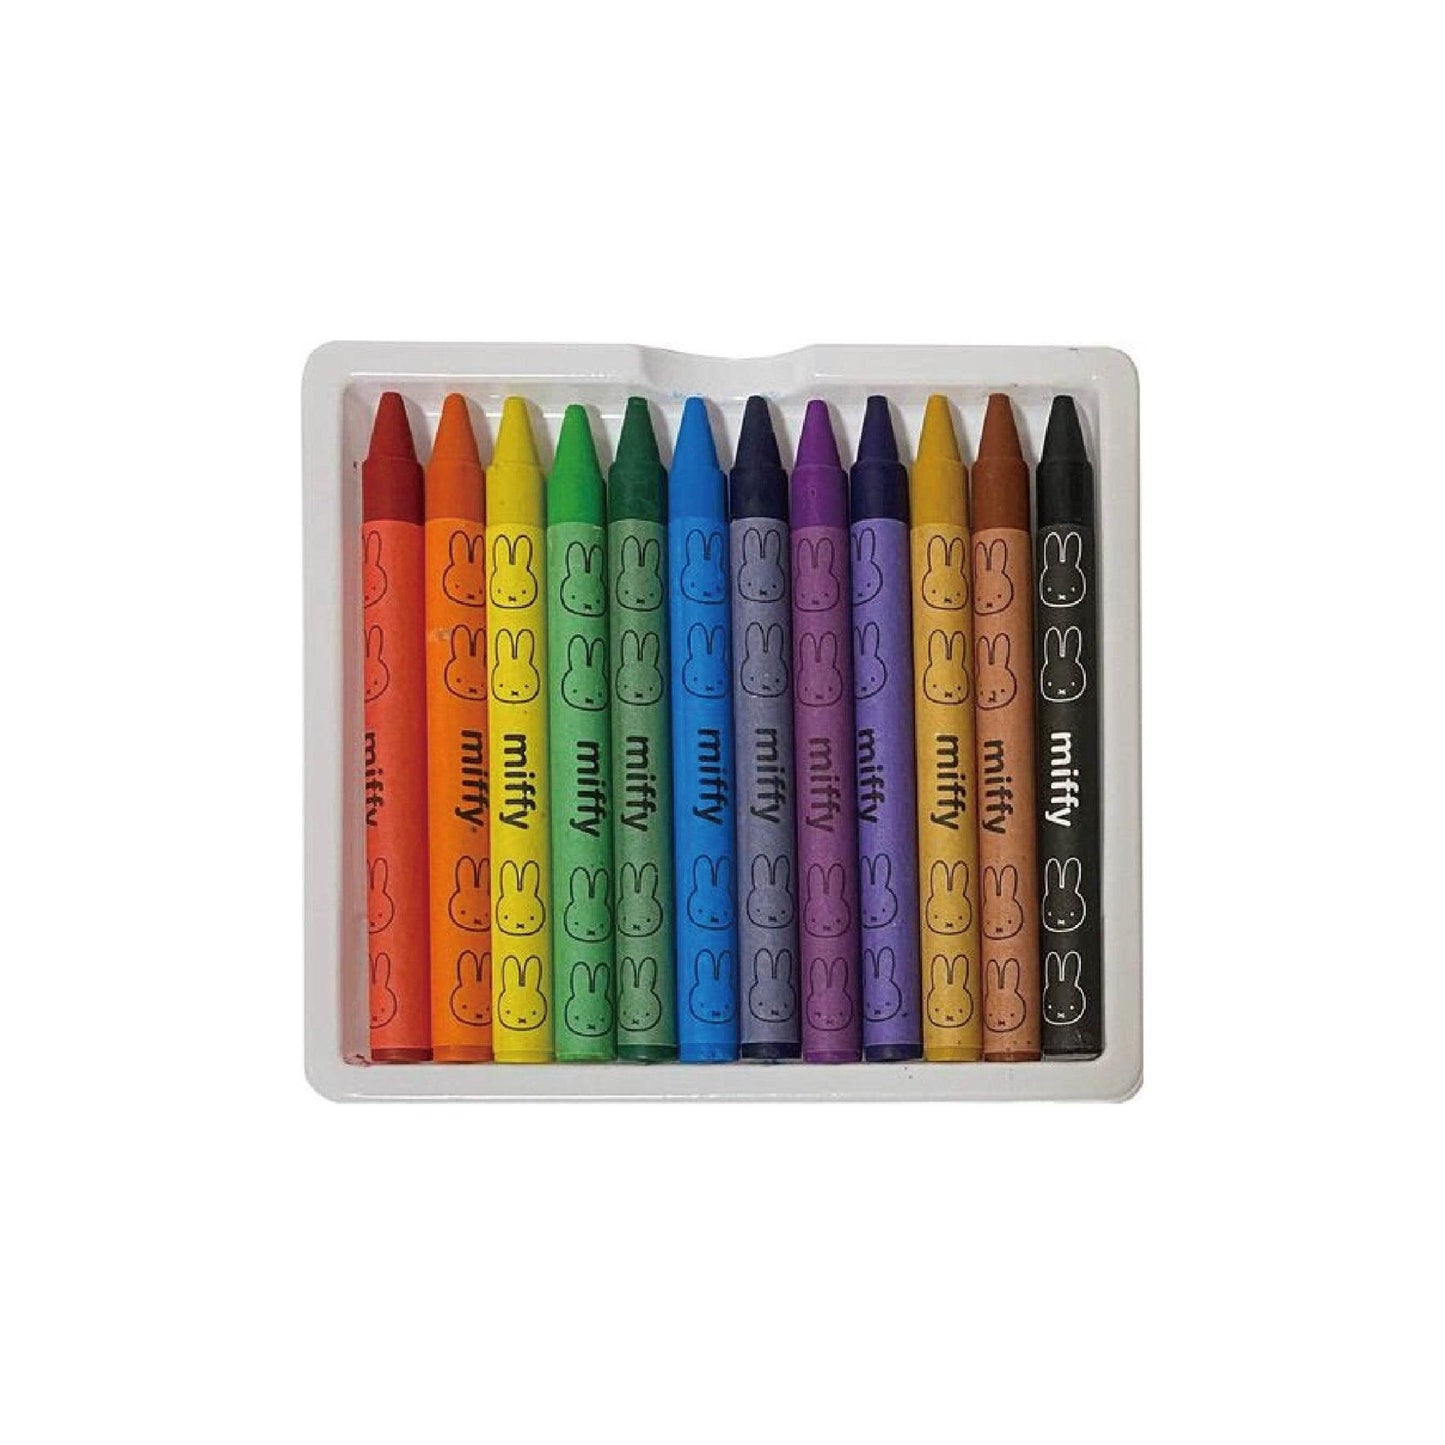 Kutsuwa MF657 Miffy Shape 12 Colors Crayon Set Mini Crayon Set Carton Packaging - CHL-STORE 